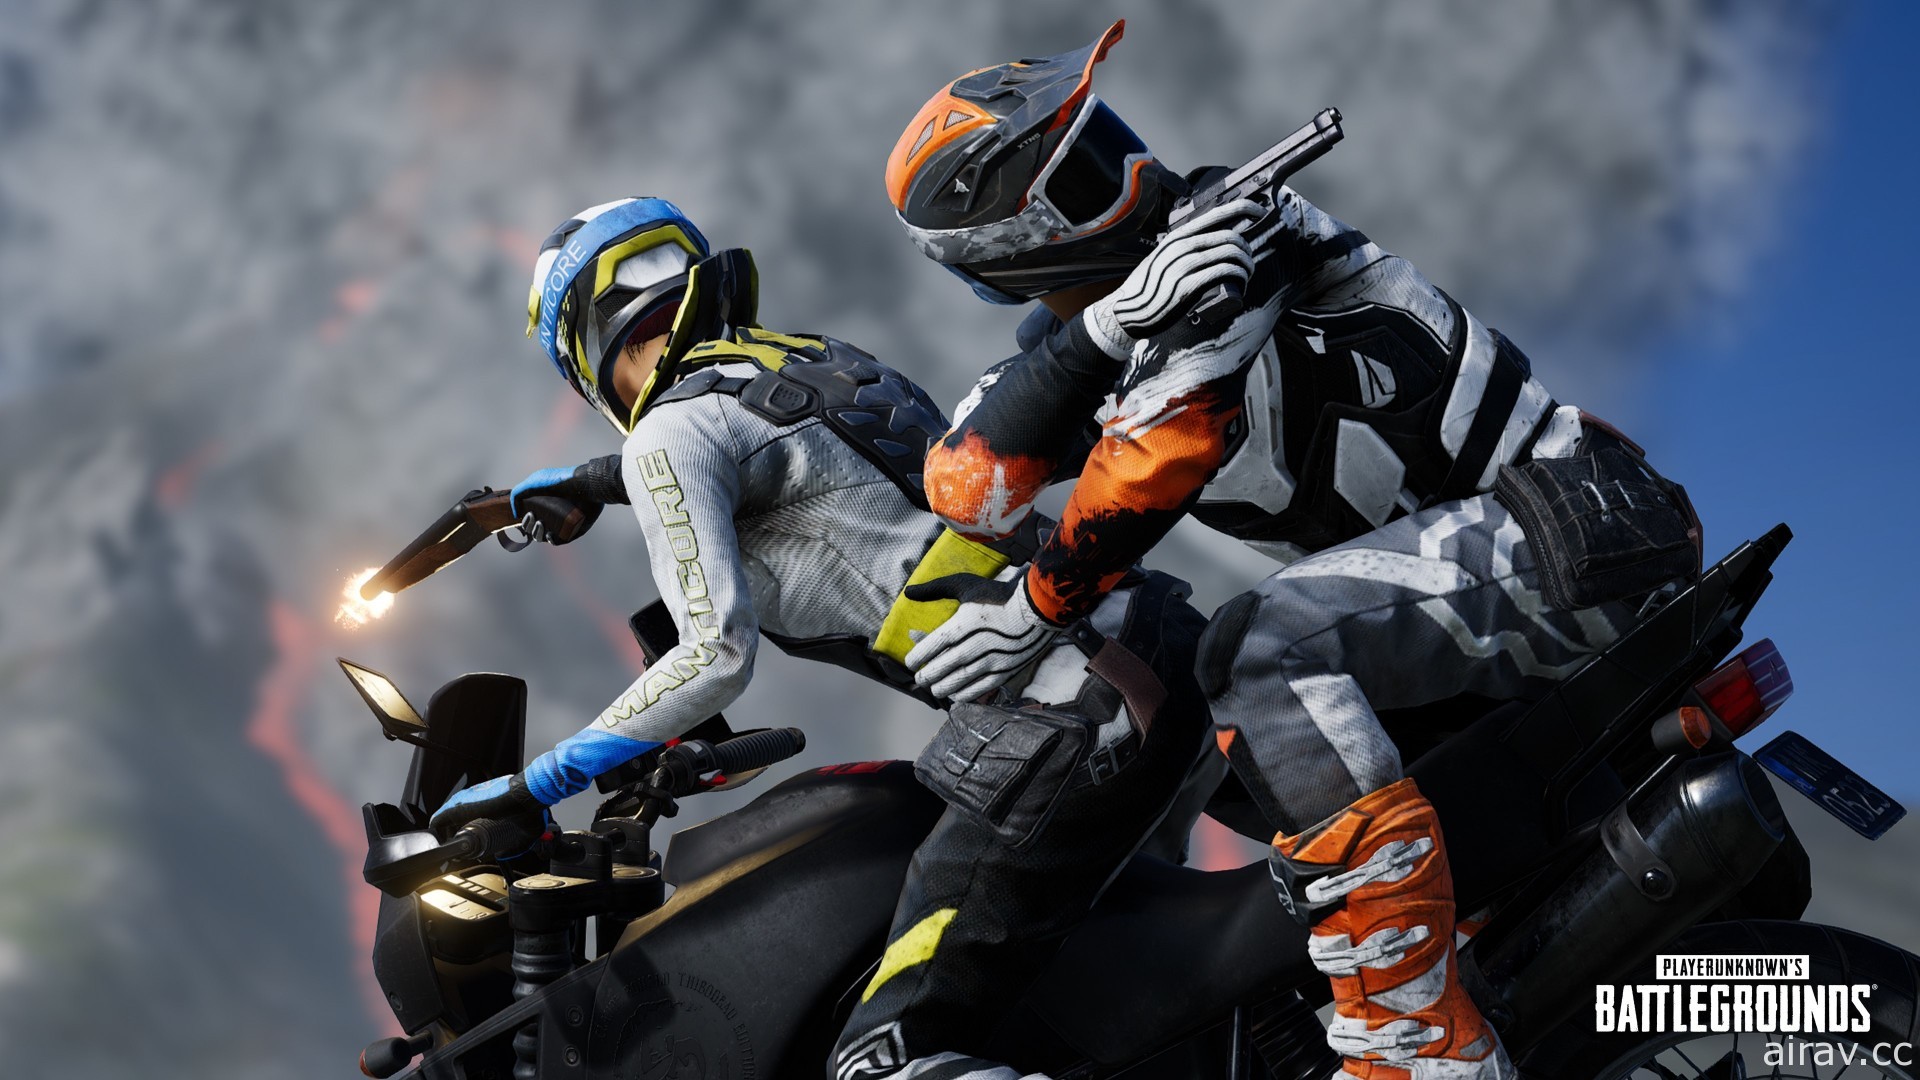 《絕地求生》越野摩托車 9.2 版參上 上演花式車技並以全新騎射技術摧毀敵人